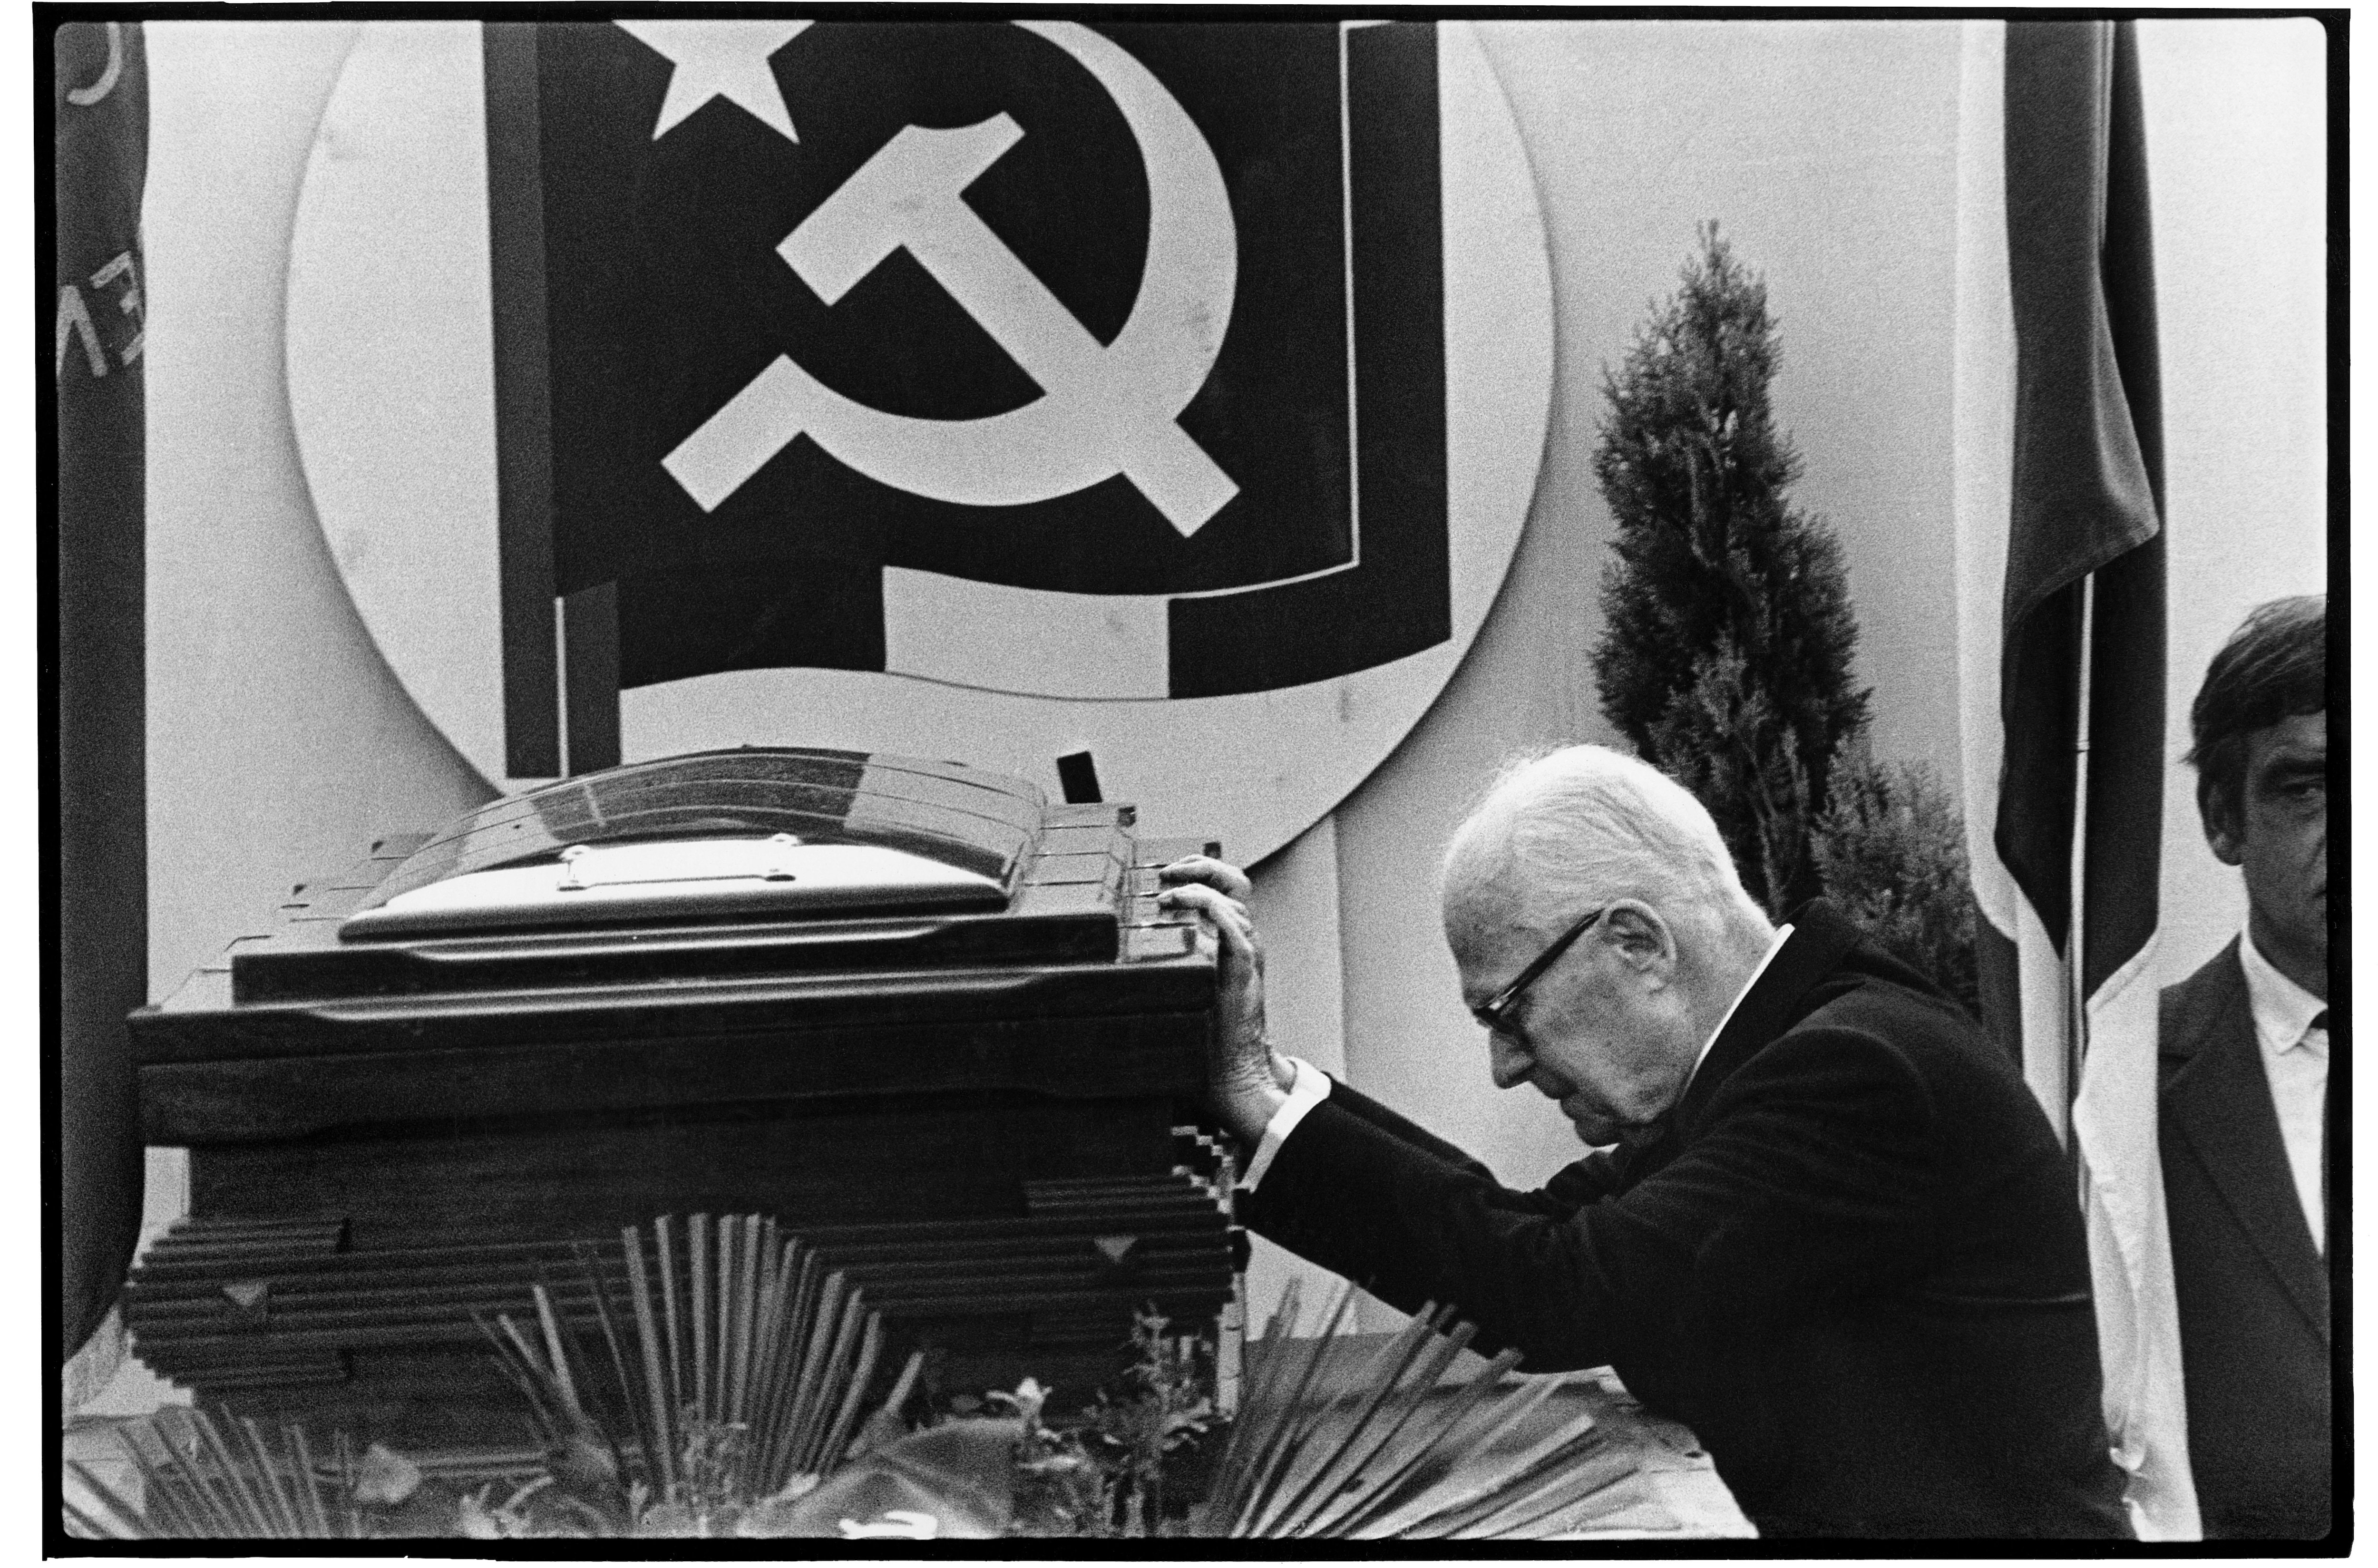 Pertini ai funerali di Enrico Berlinguer, il 13 giugno 1984